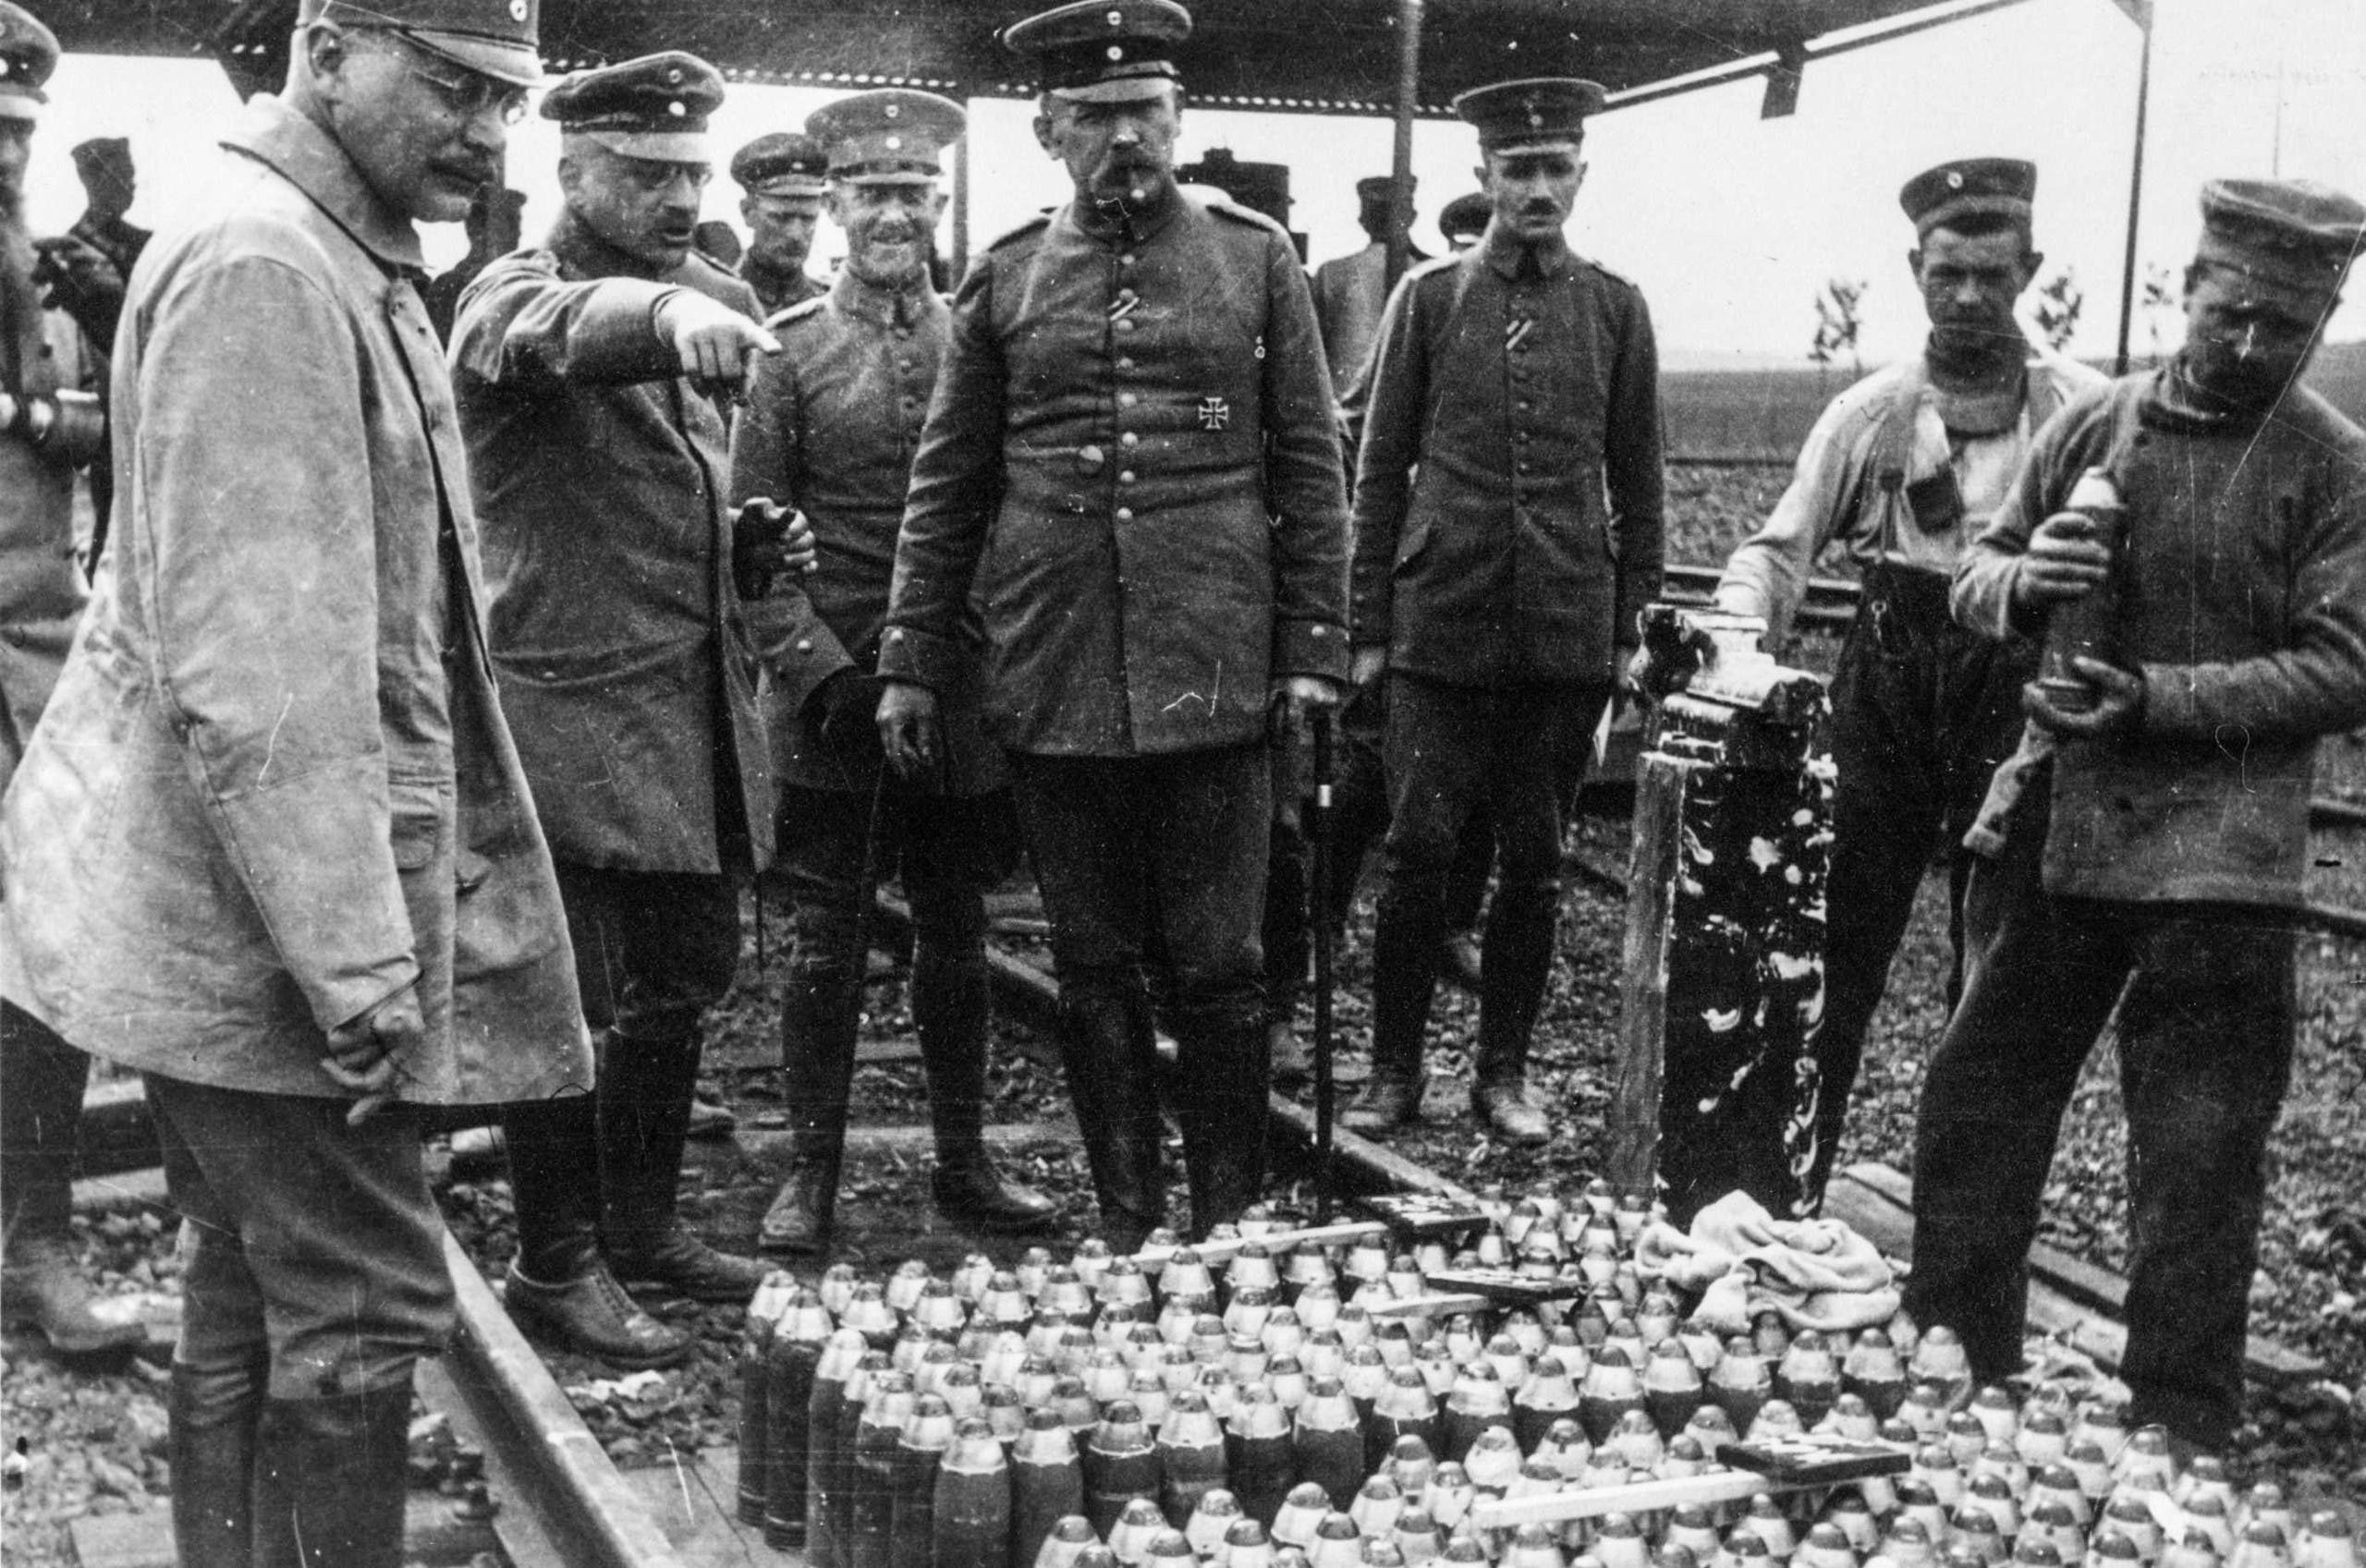 صورة لعملية تفقد عدد من الجنرالات الألمان لقذائف مجهزة بعناصر كيمياوية خلال الحرب الكبرى